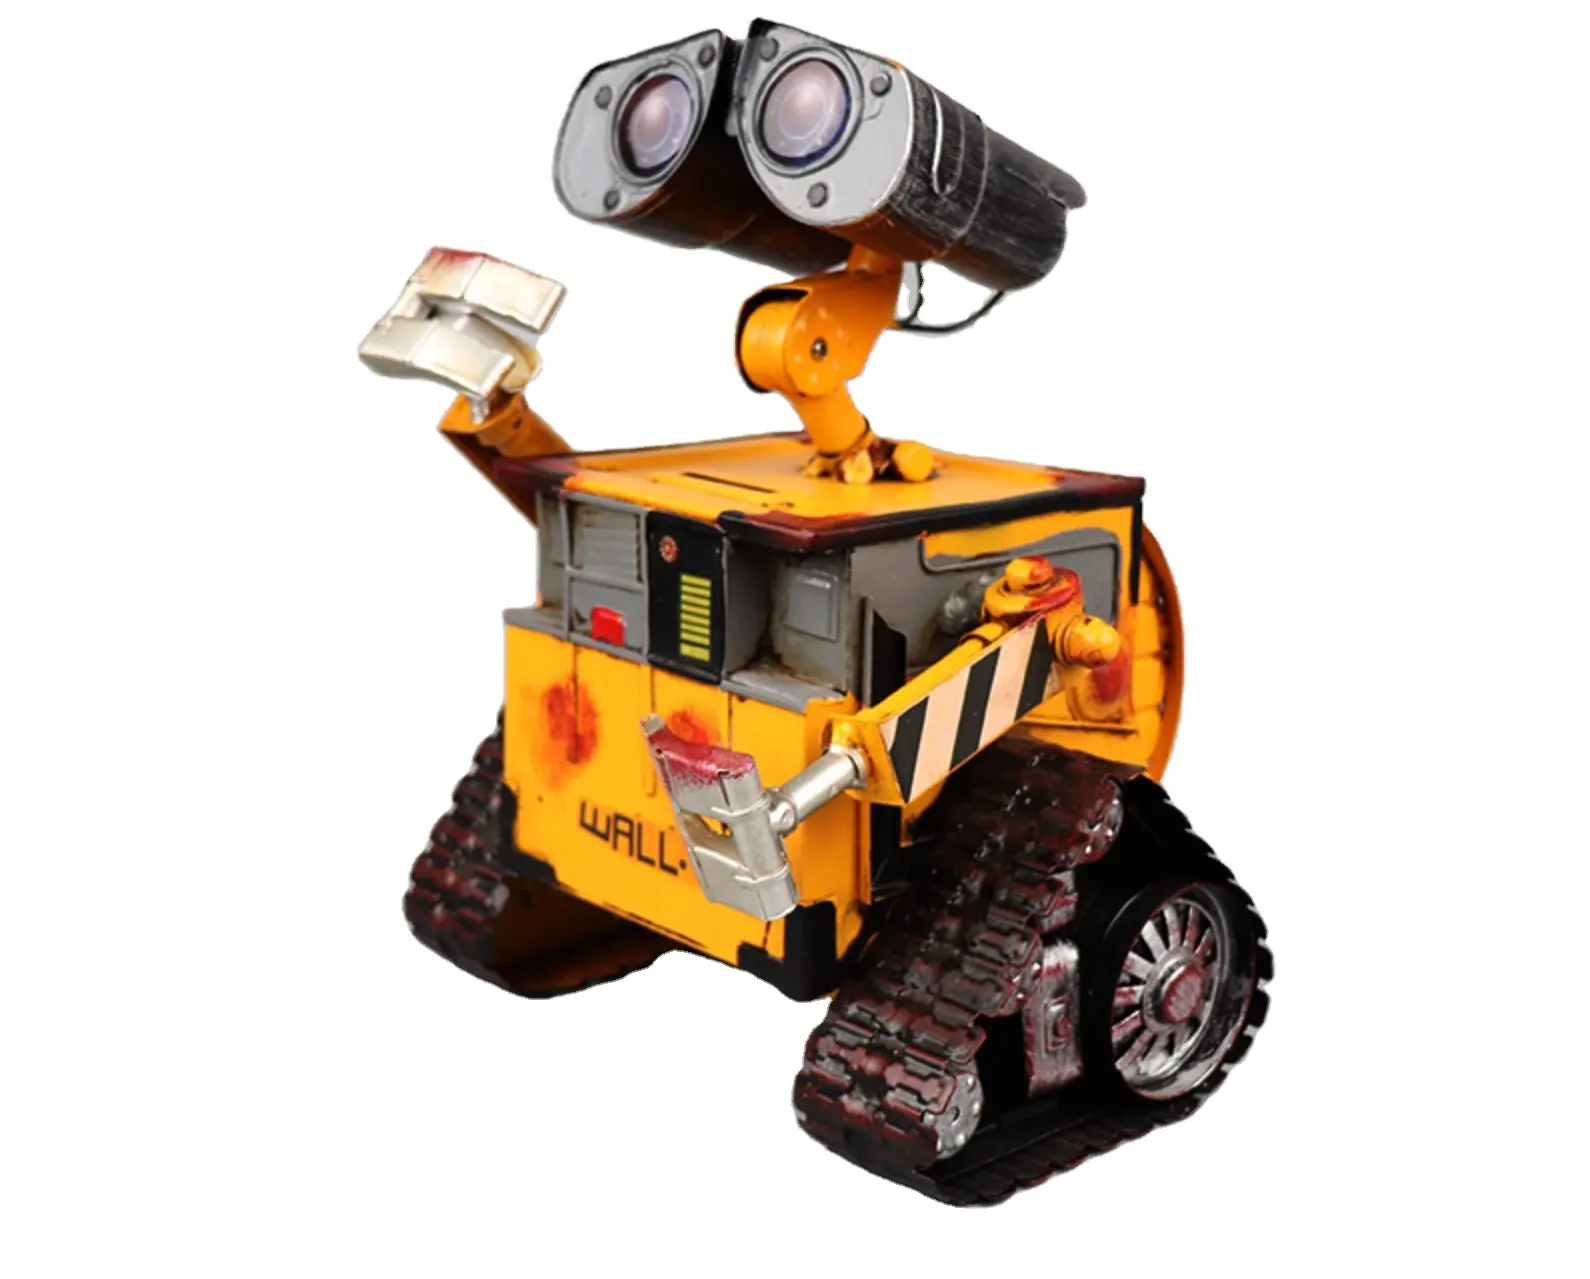 Wall-E The Robot High-Tech Diy Building Idea Figuras Modelo